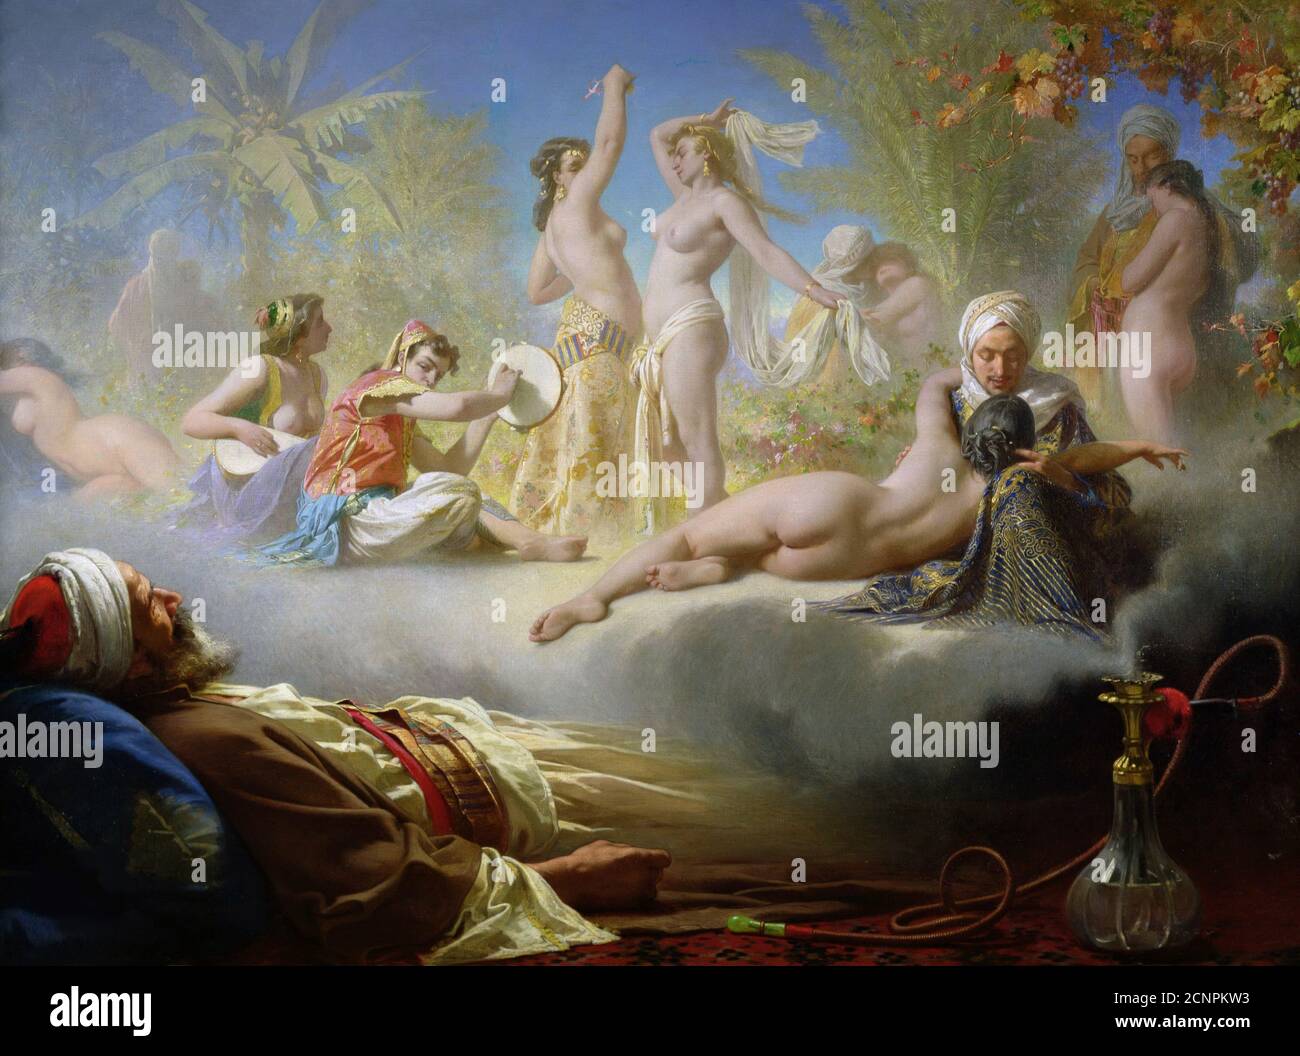 Der Traum des Gläubigen, c. 1870. Gefunden in der Sammlung des Musee Bonnat, Bayonne. Stockfoto